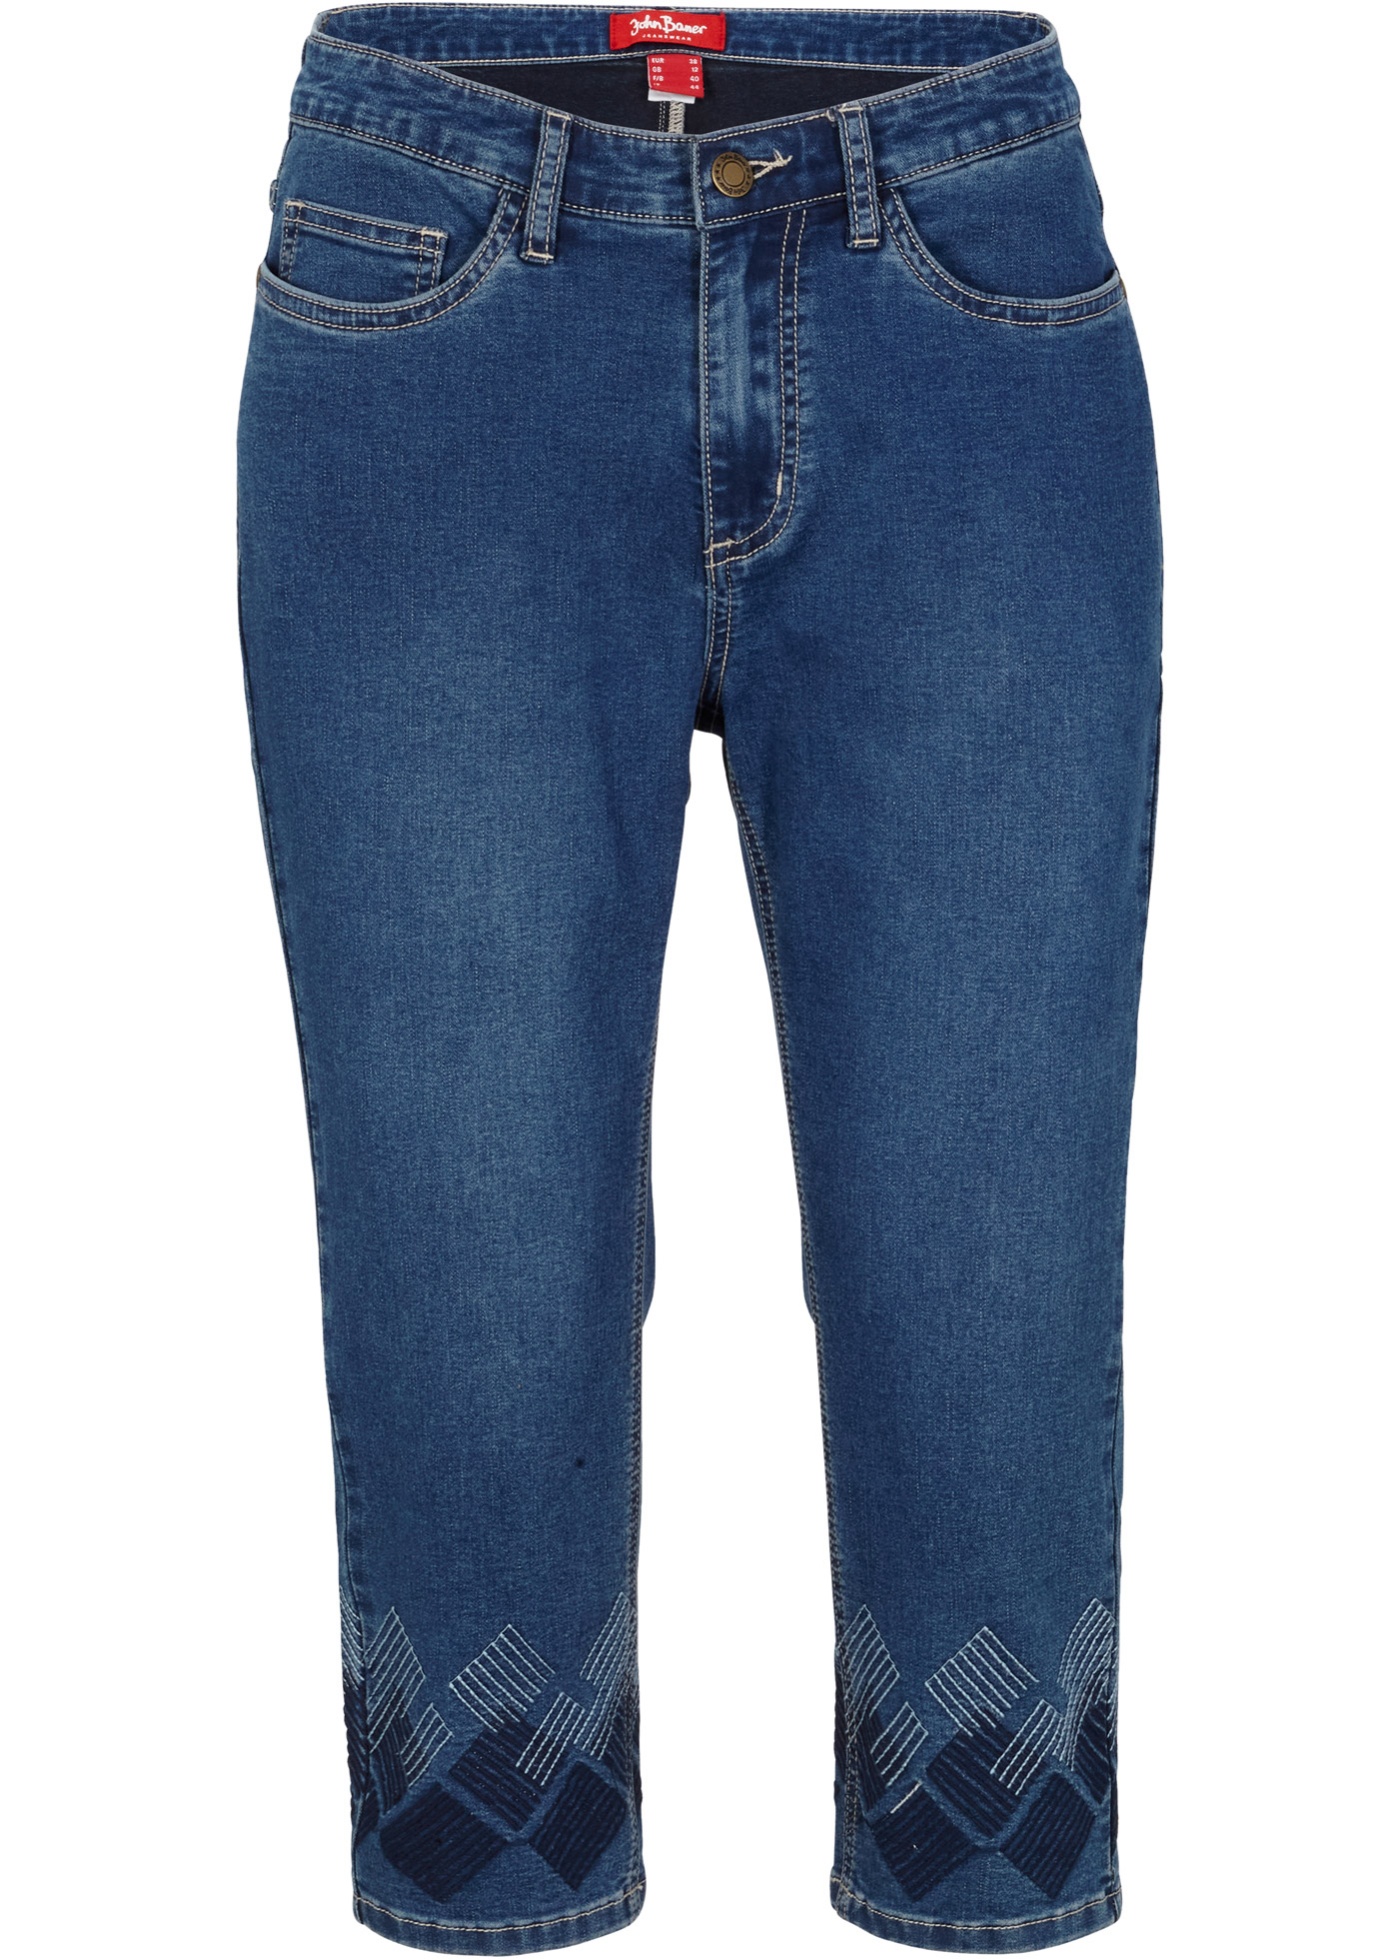 Super stretch capri jeans